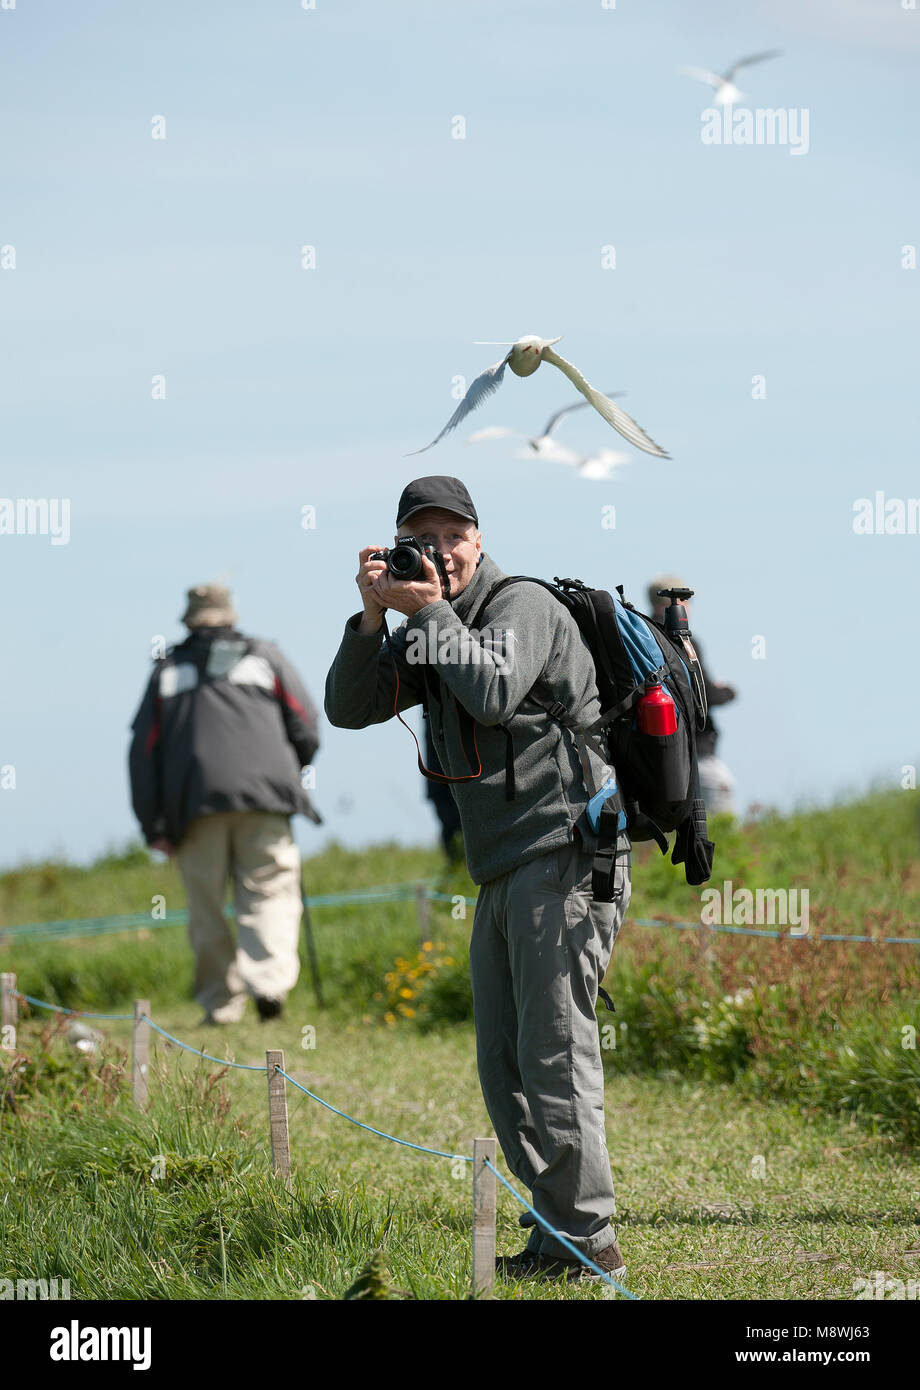 Vogelfotograaf, Bird photographer Stock Photo